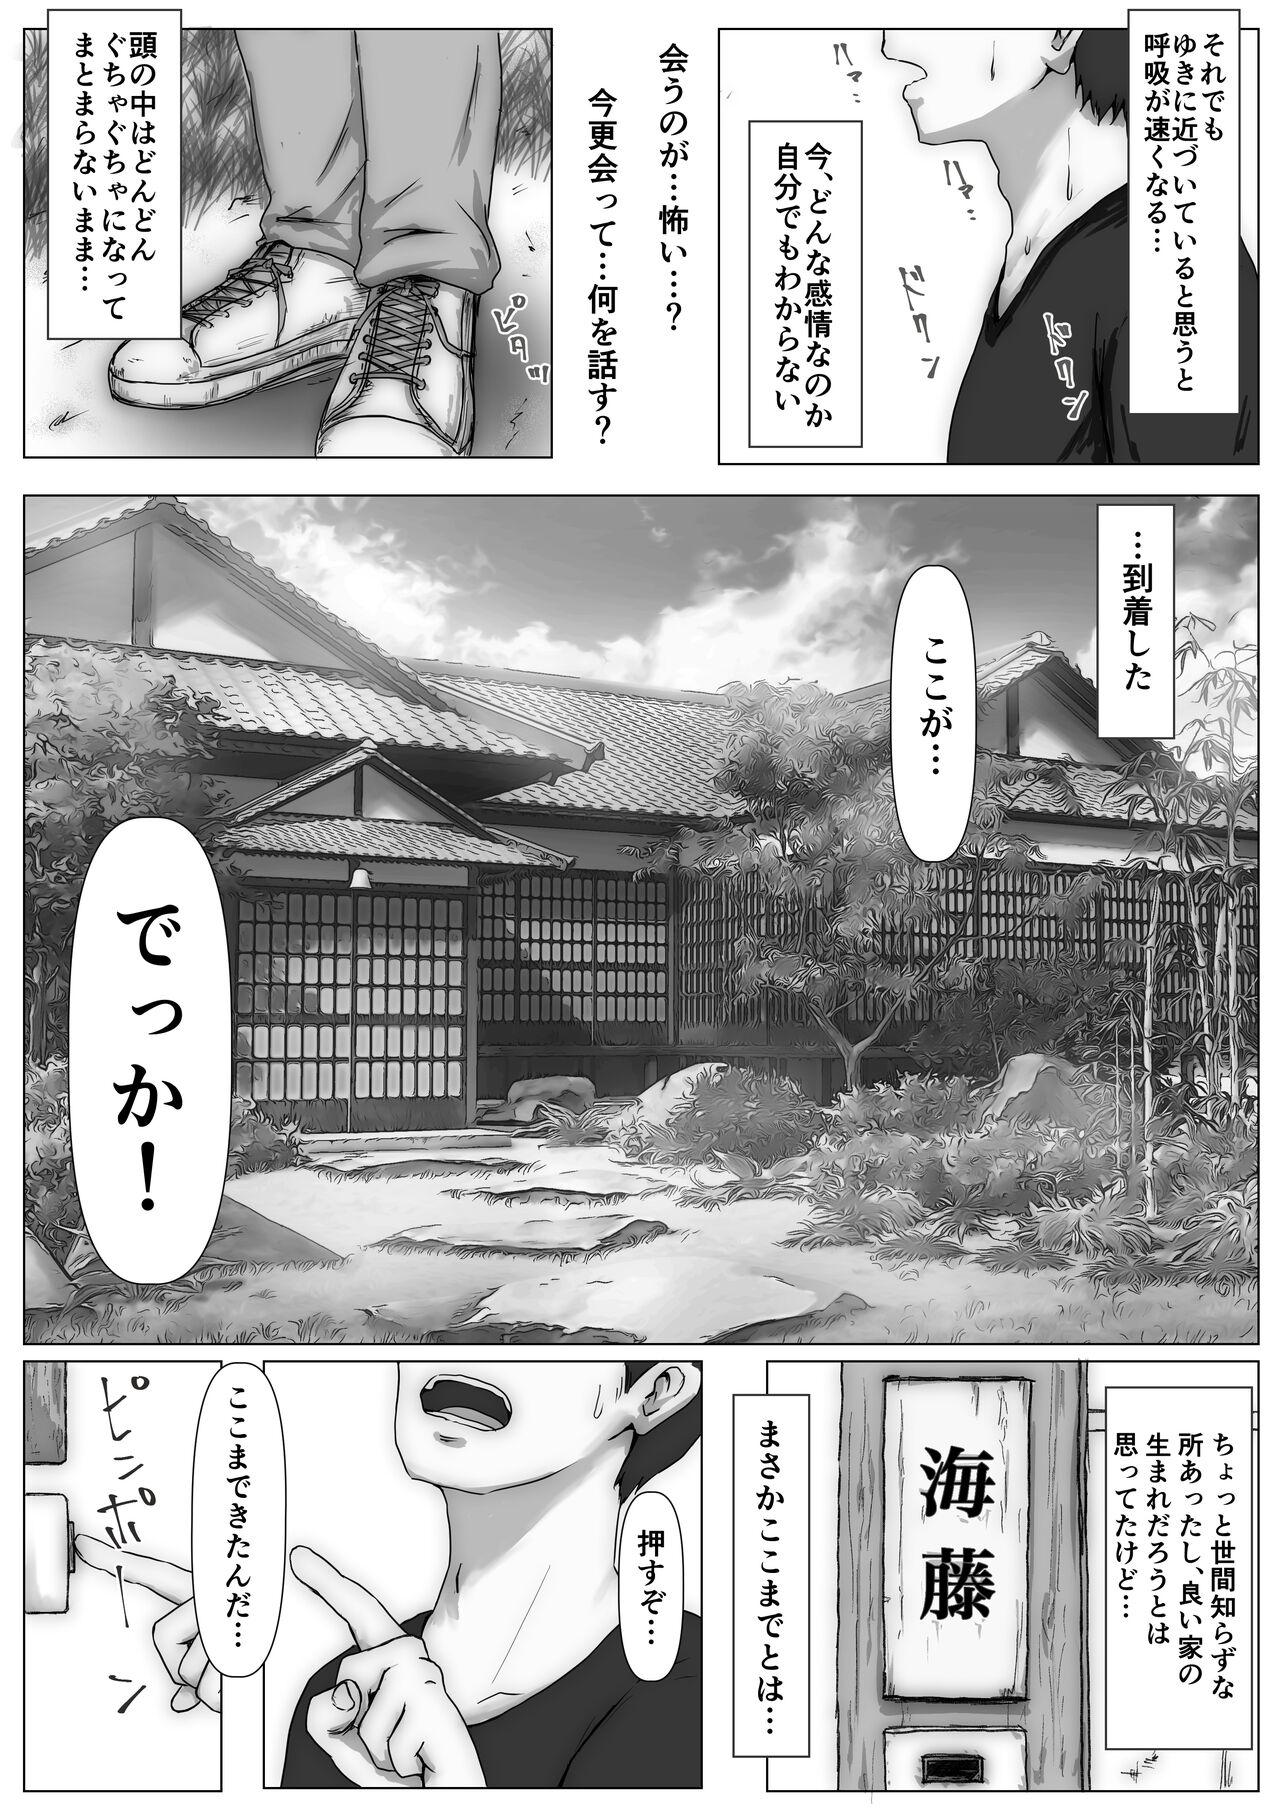 Fetish Honto no Kanojo 3 - Original Solo Female - Page 11